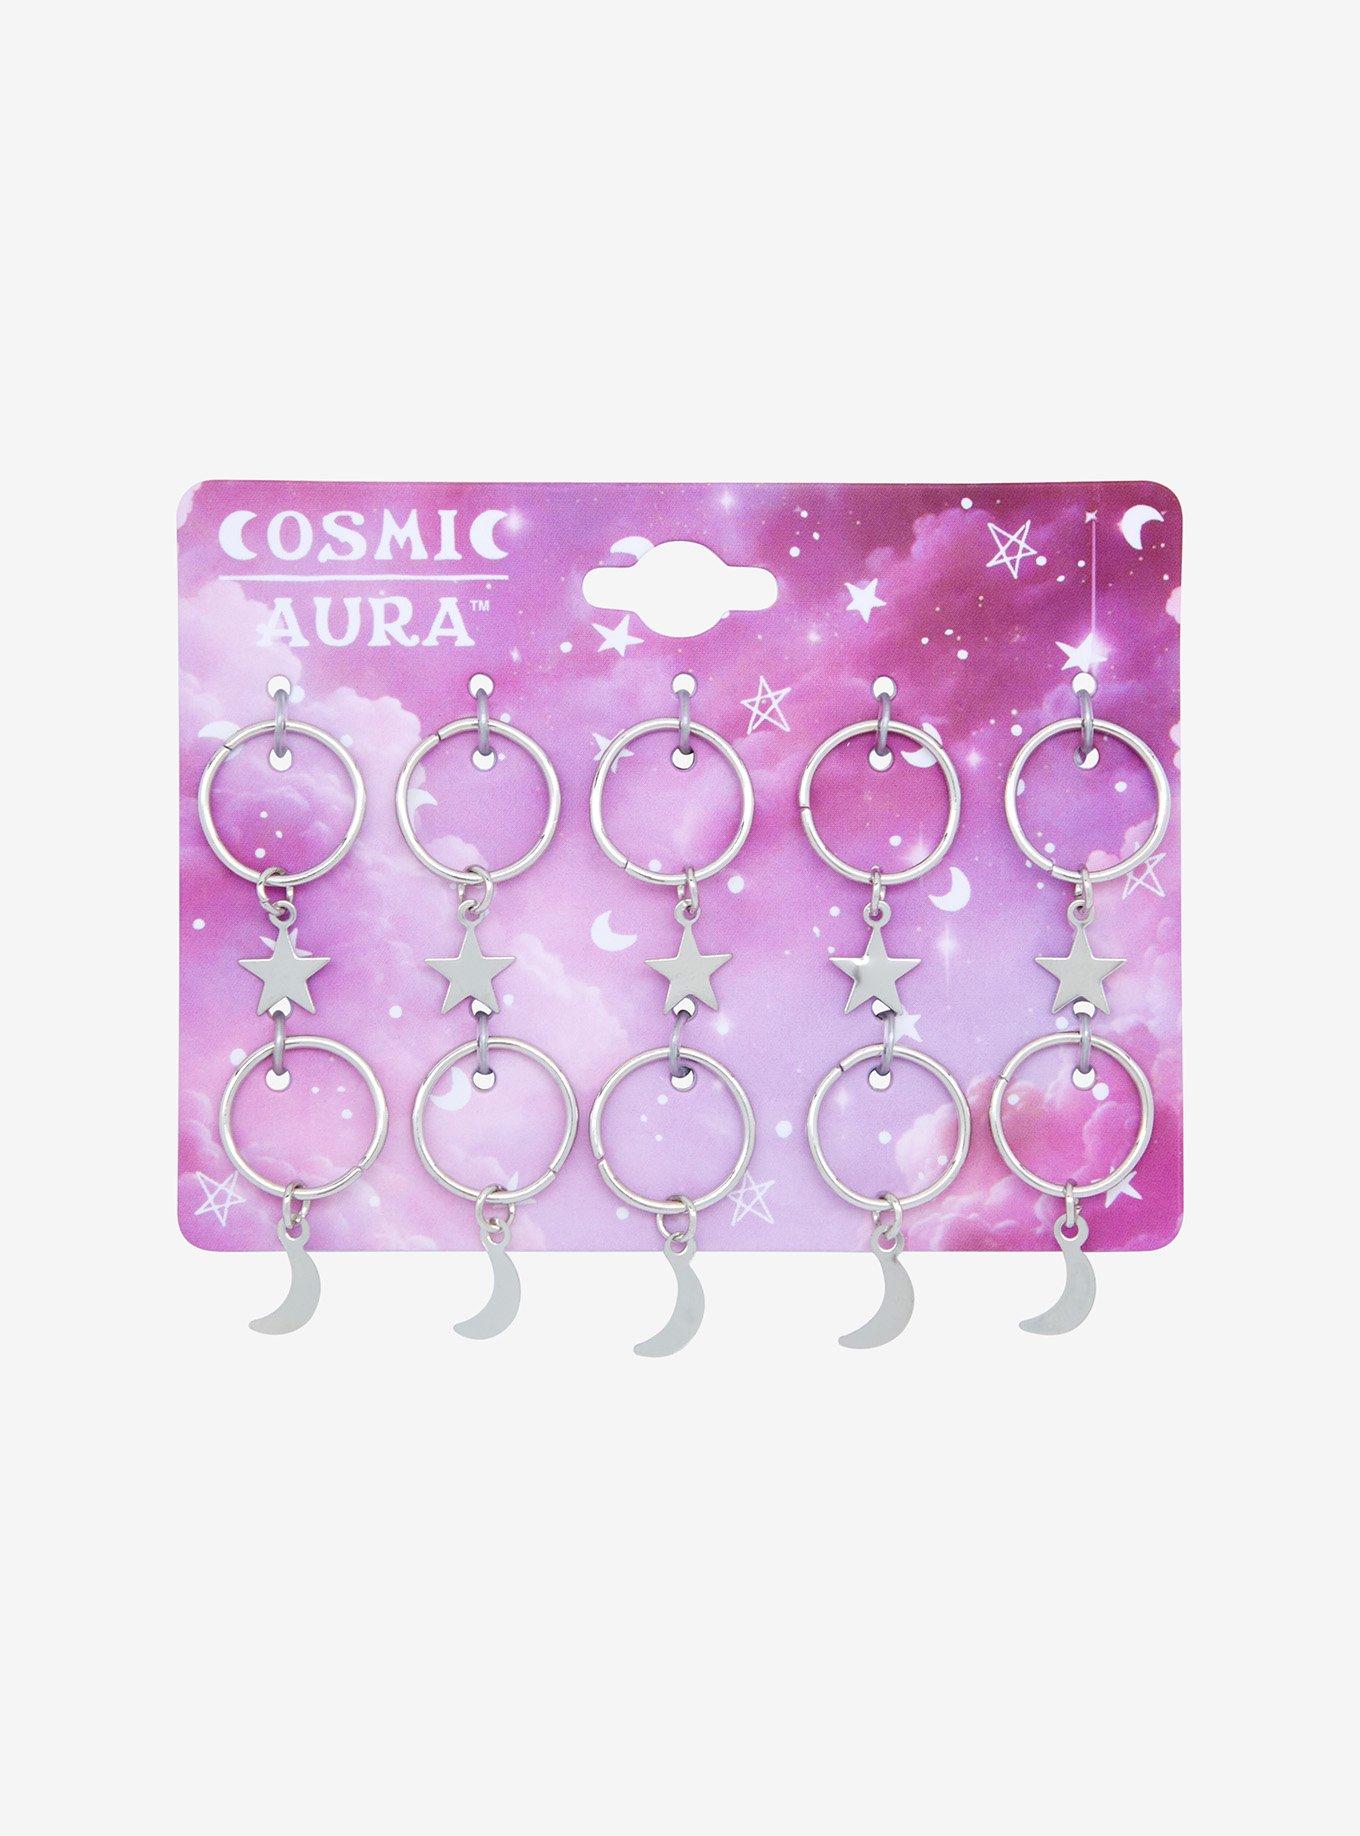 Cosmic Aura Silver Celestial Hair Charms